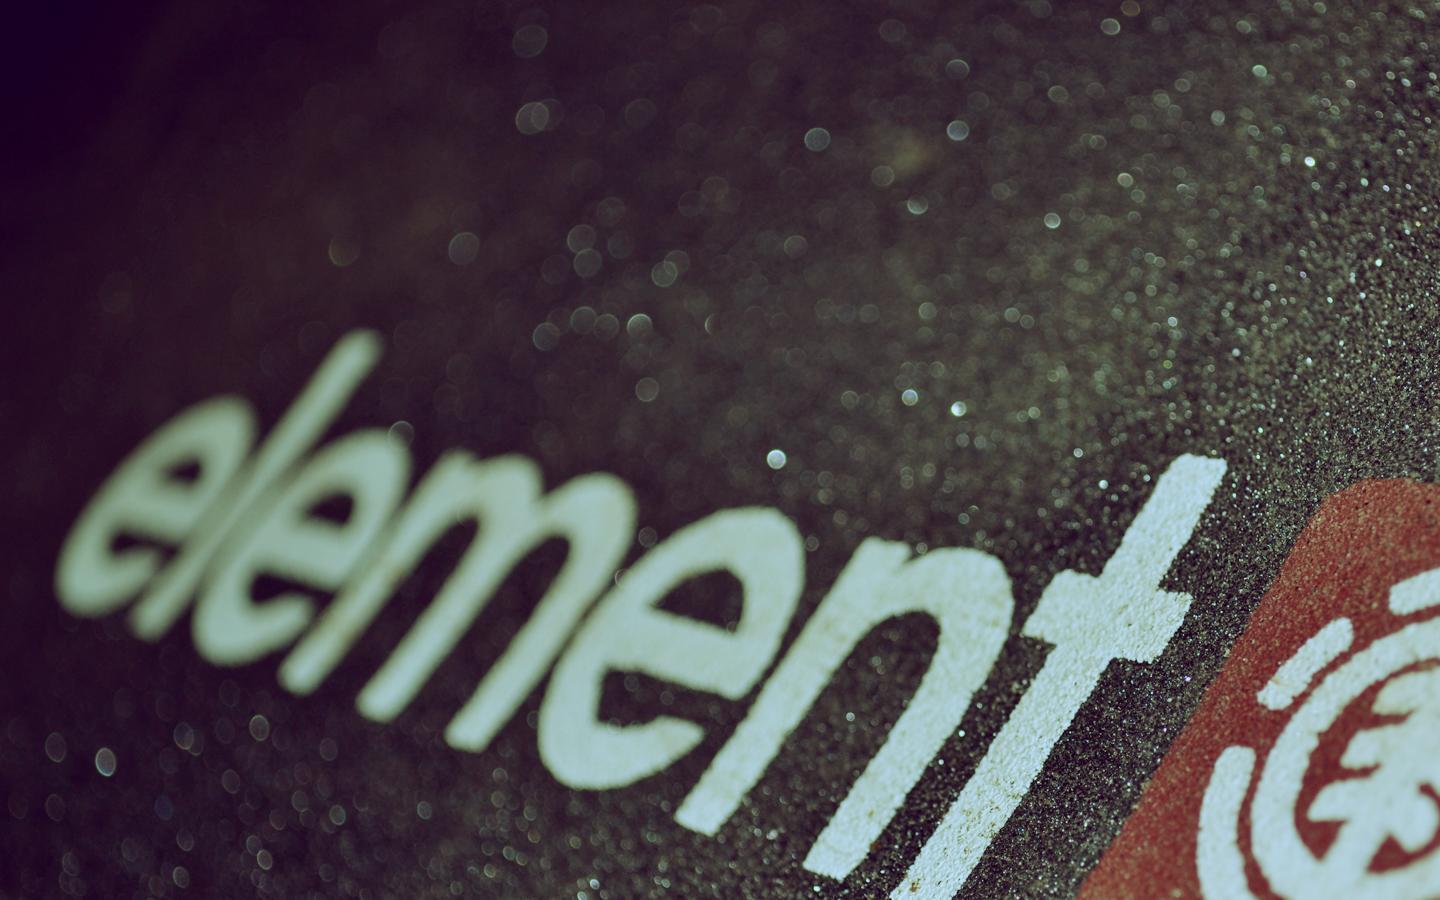 element skate logo wallpaper